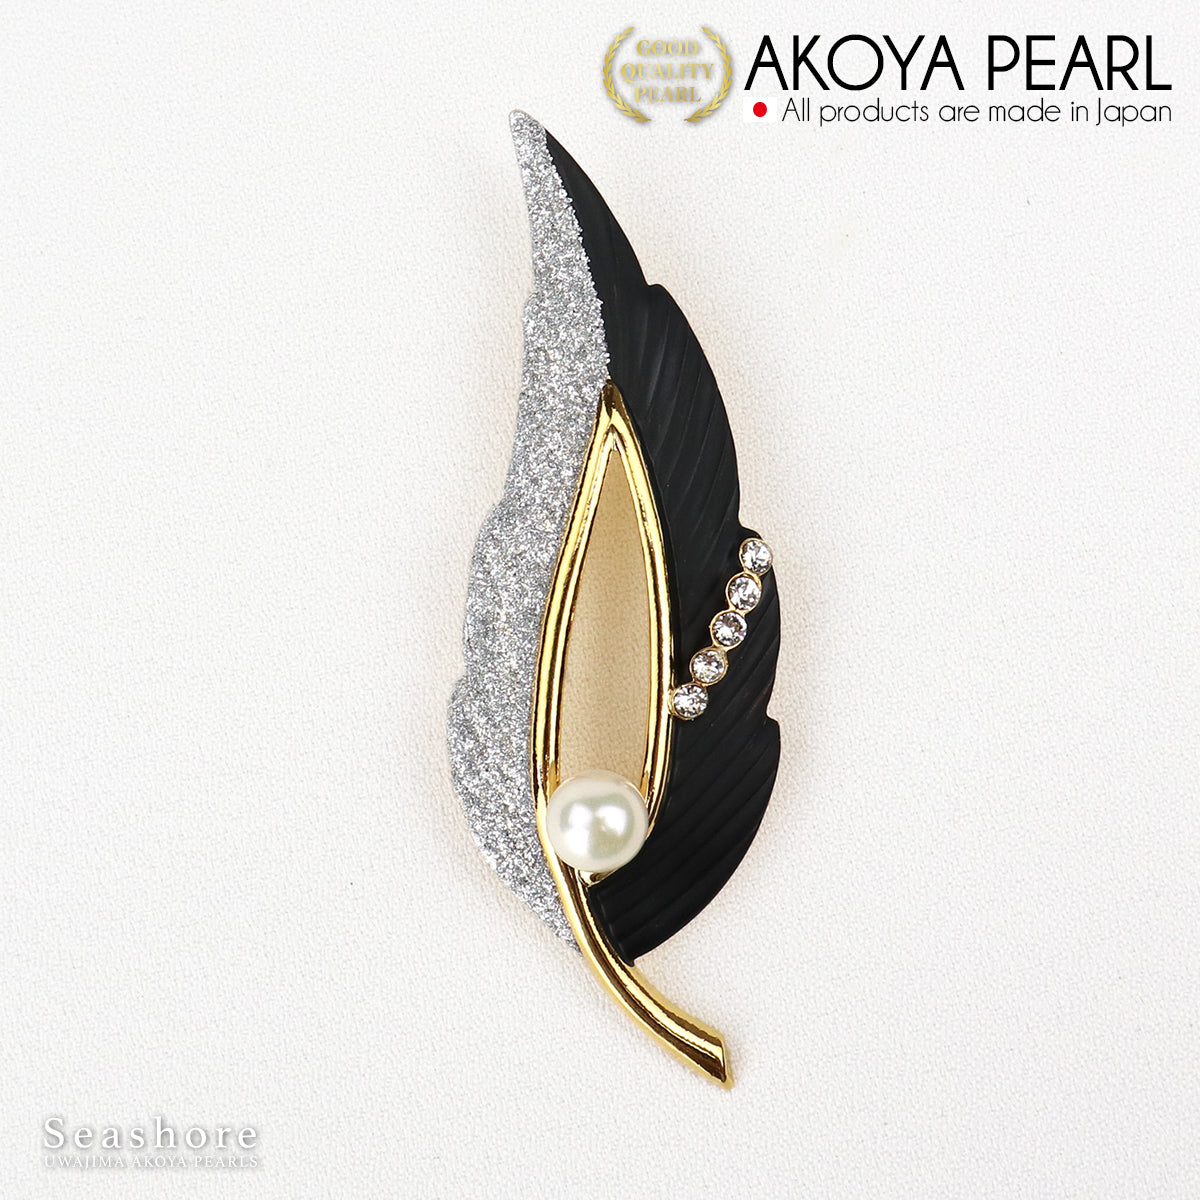 珍珠胸针羽毛黑色黄铜白色 7.5-8.0 毫米 Akoya 珍珠带储物盒 (3931)